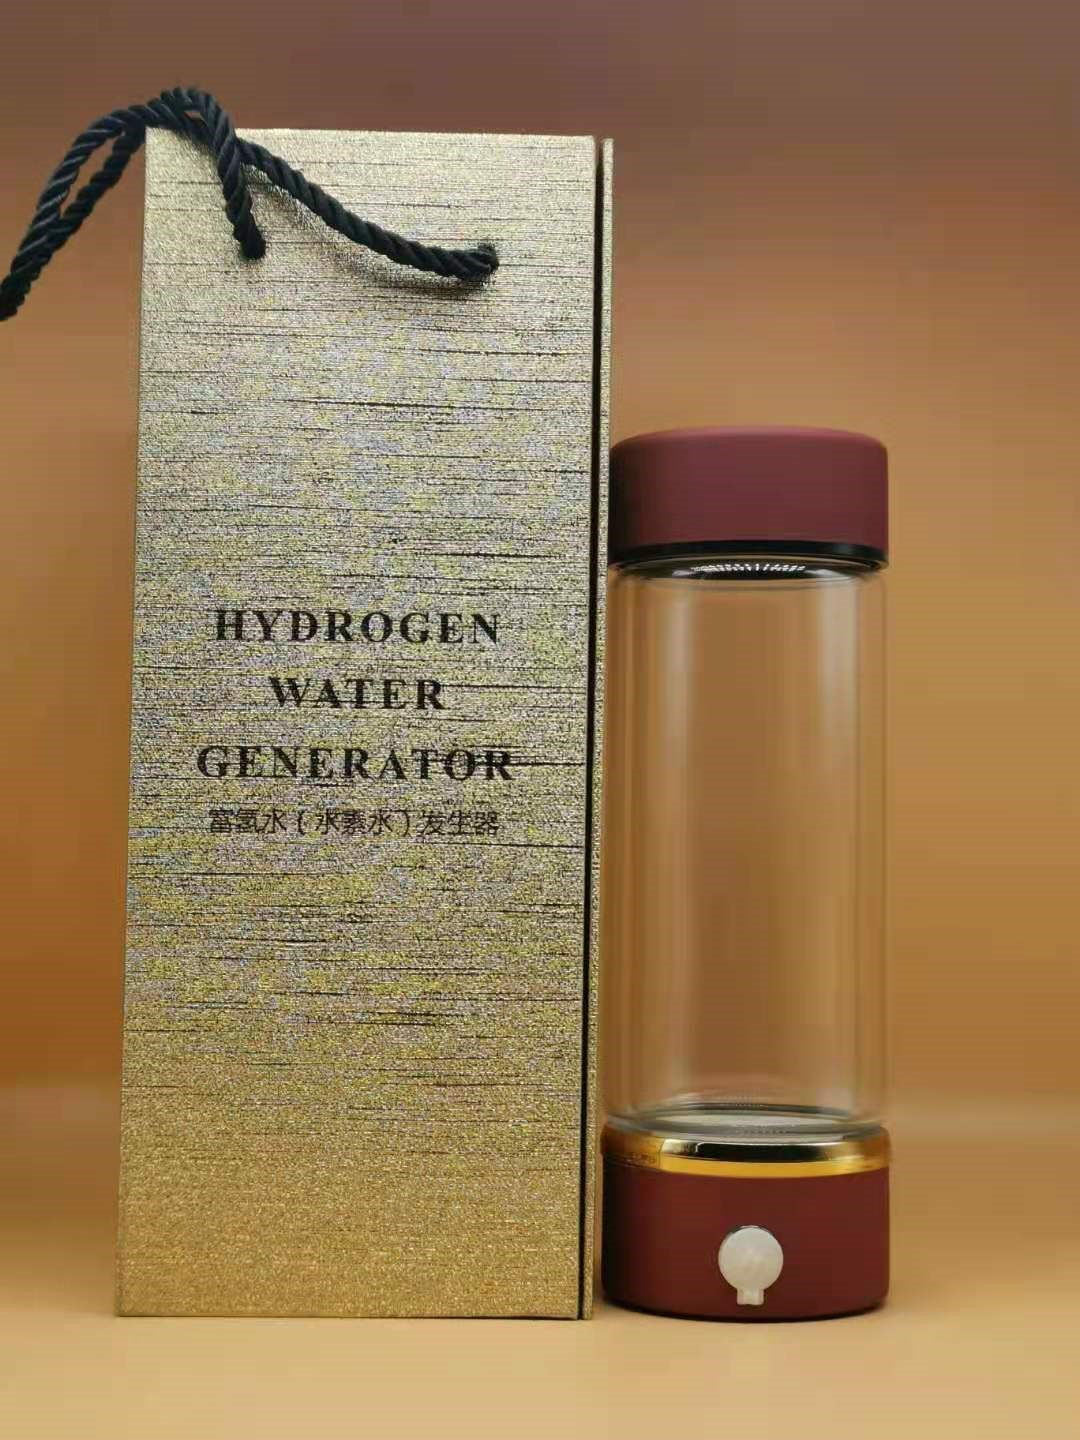 Briefing d'une bouteille d'eau hydrogène saine dans les détails